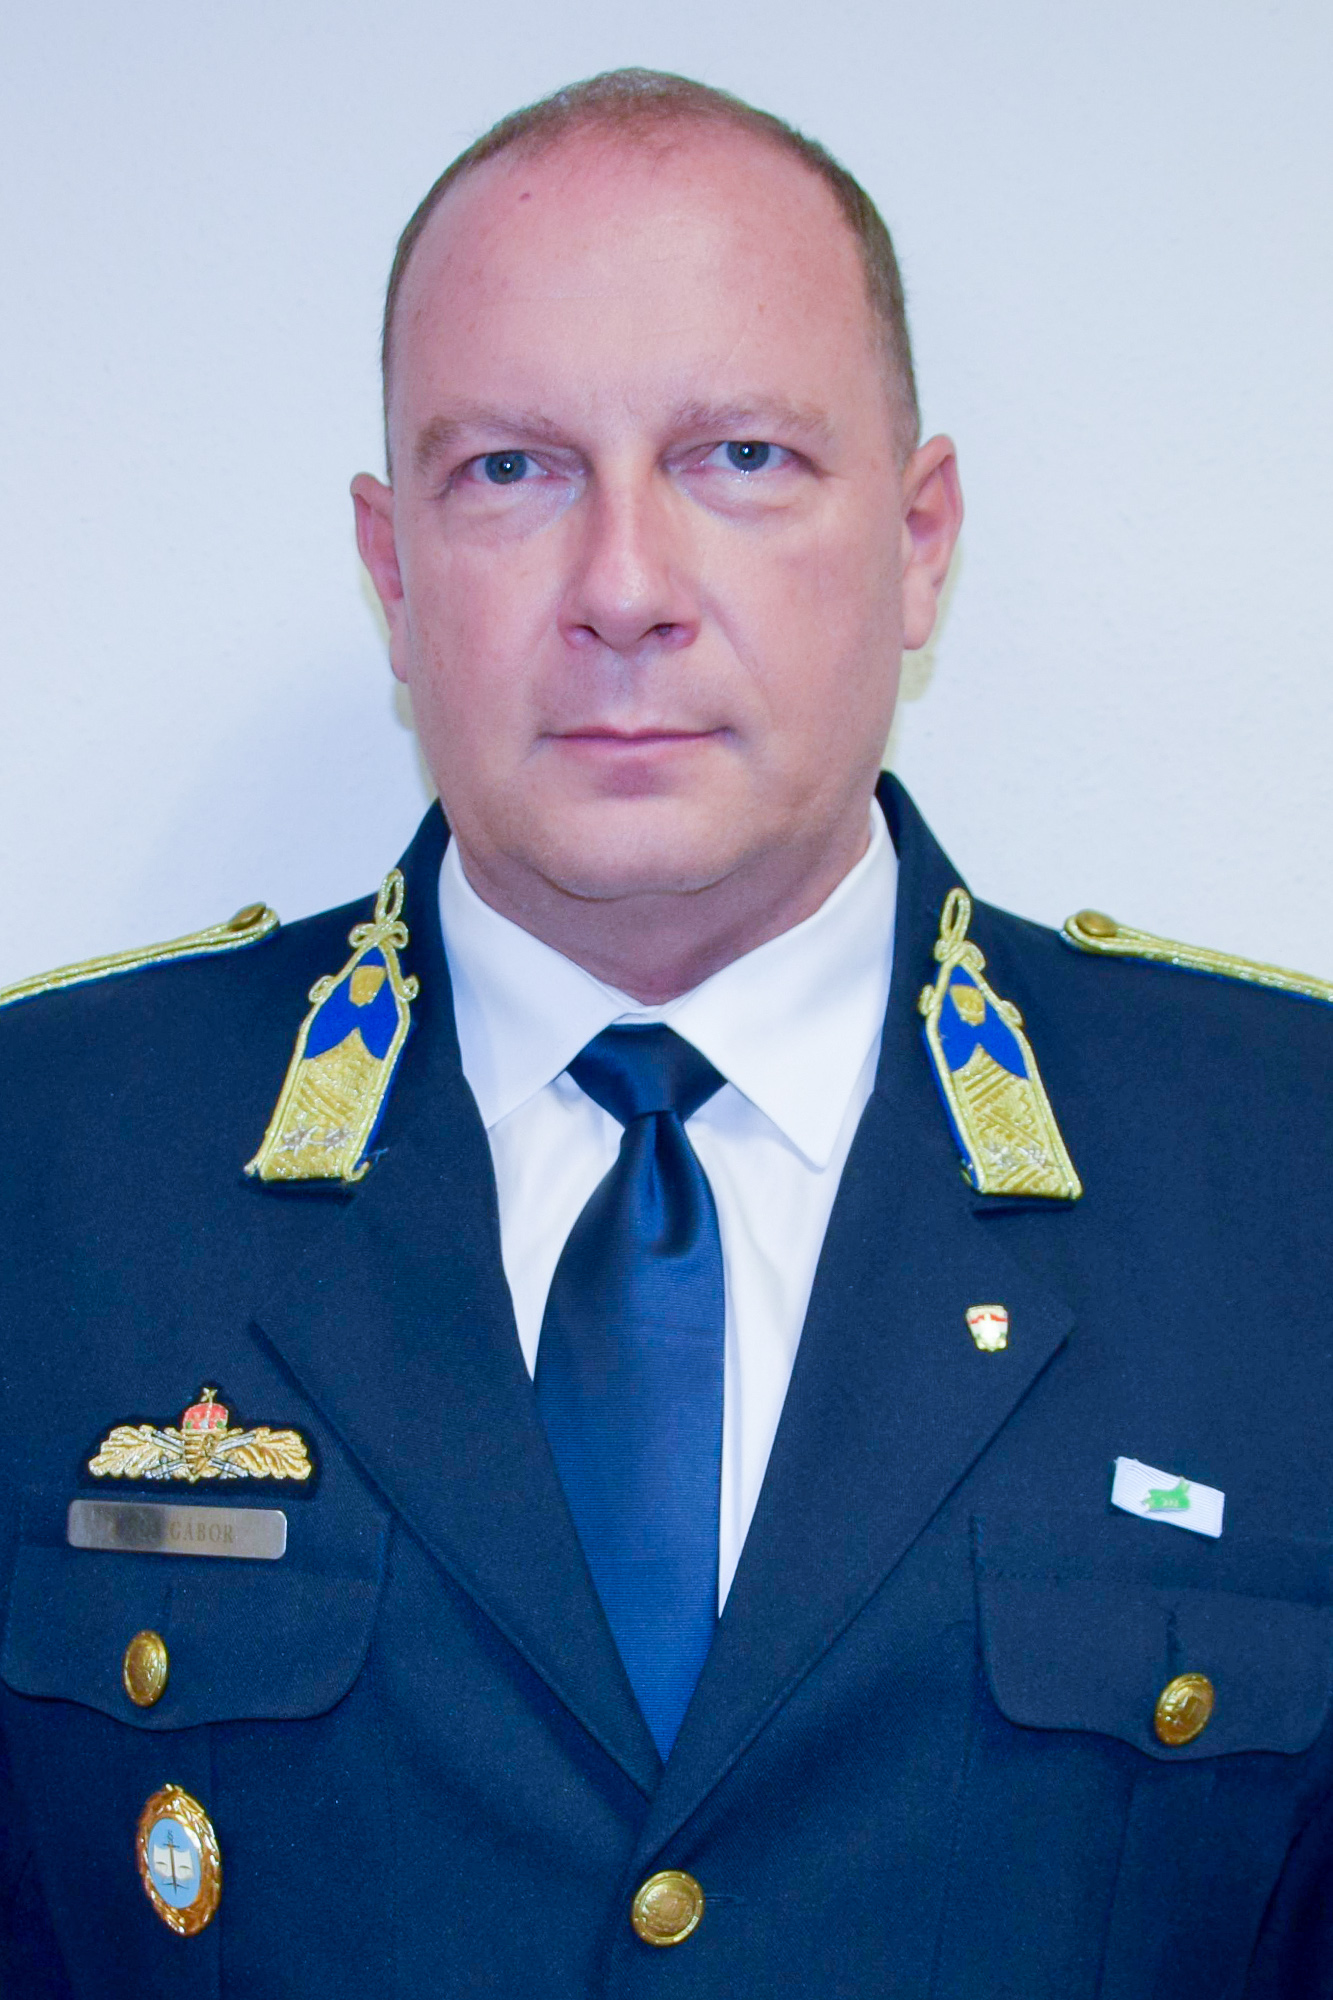 Buda Gábor rendőr alezredes